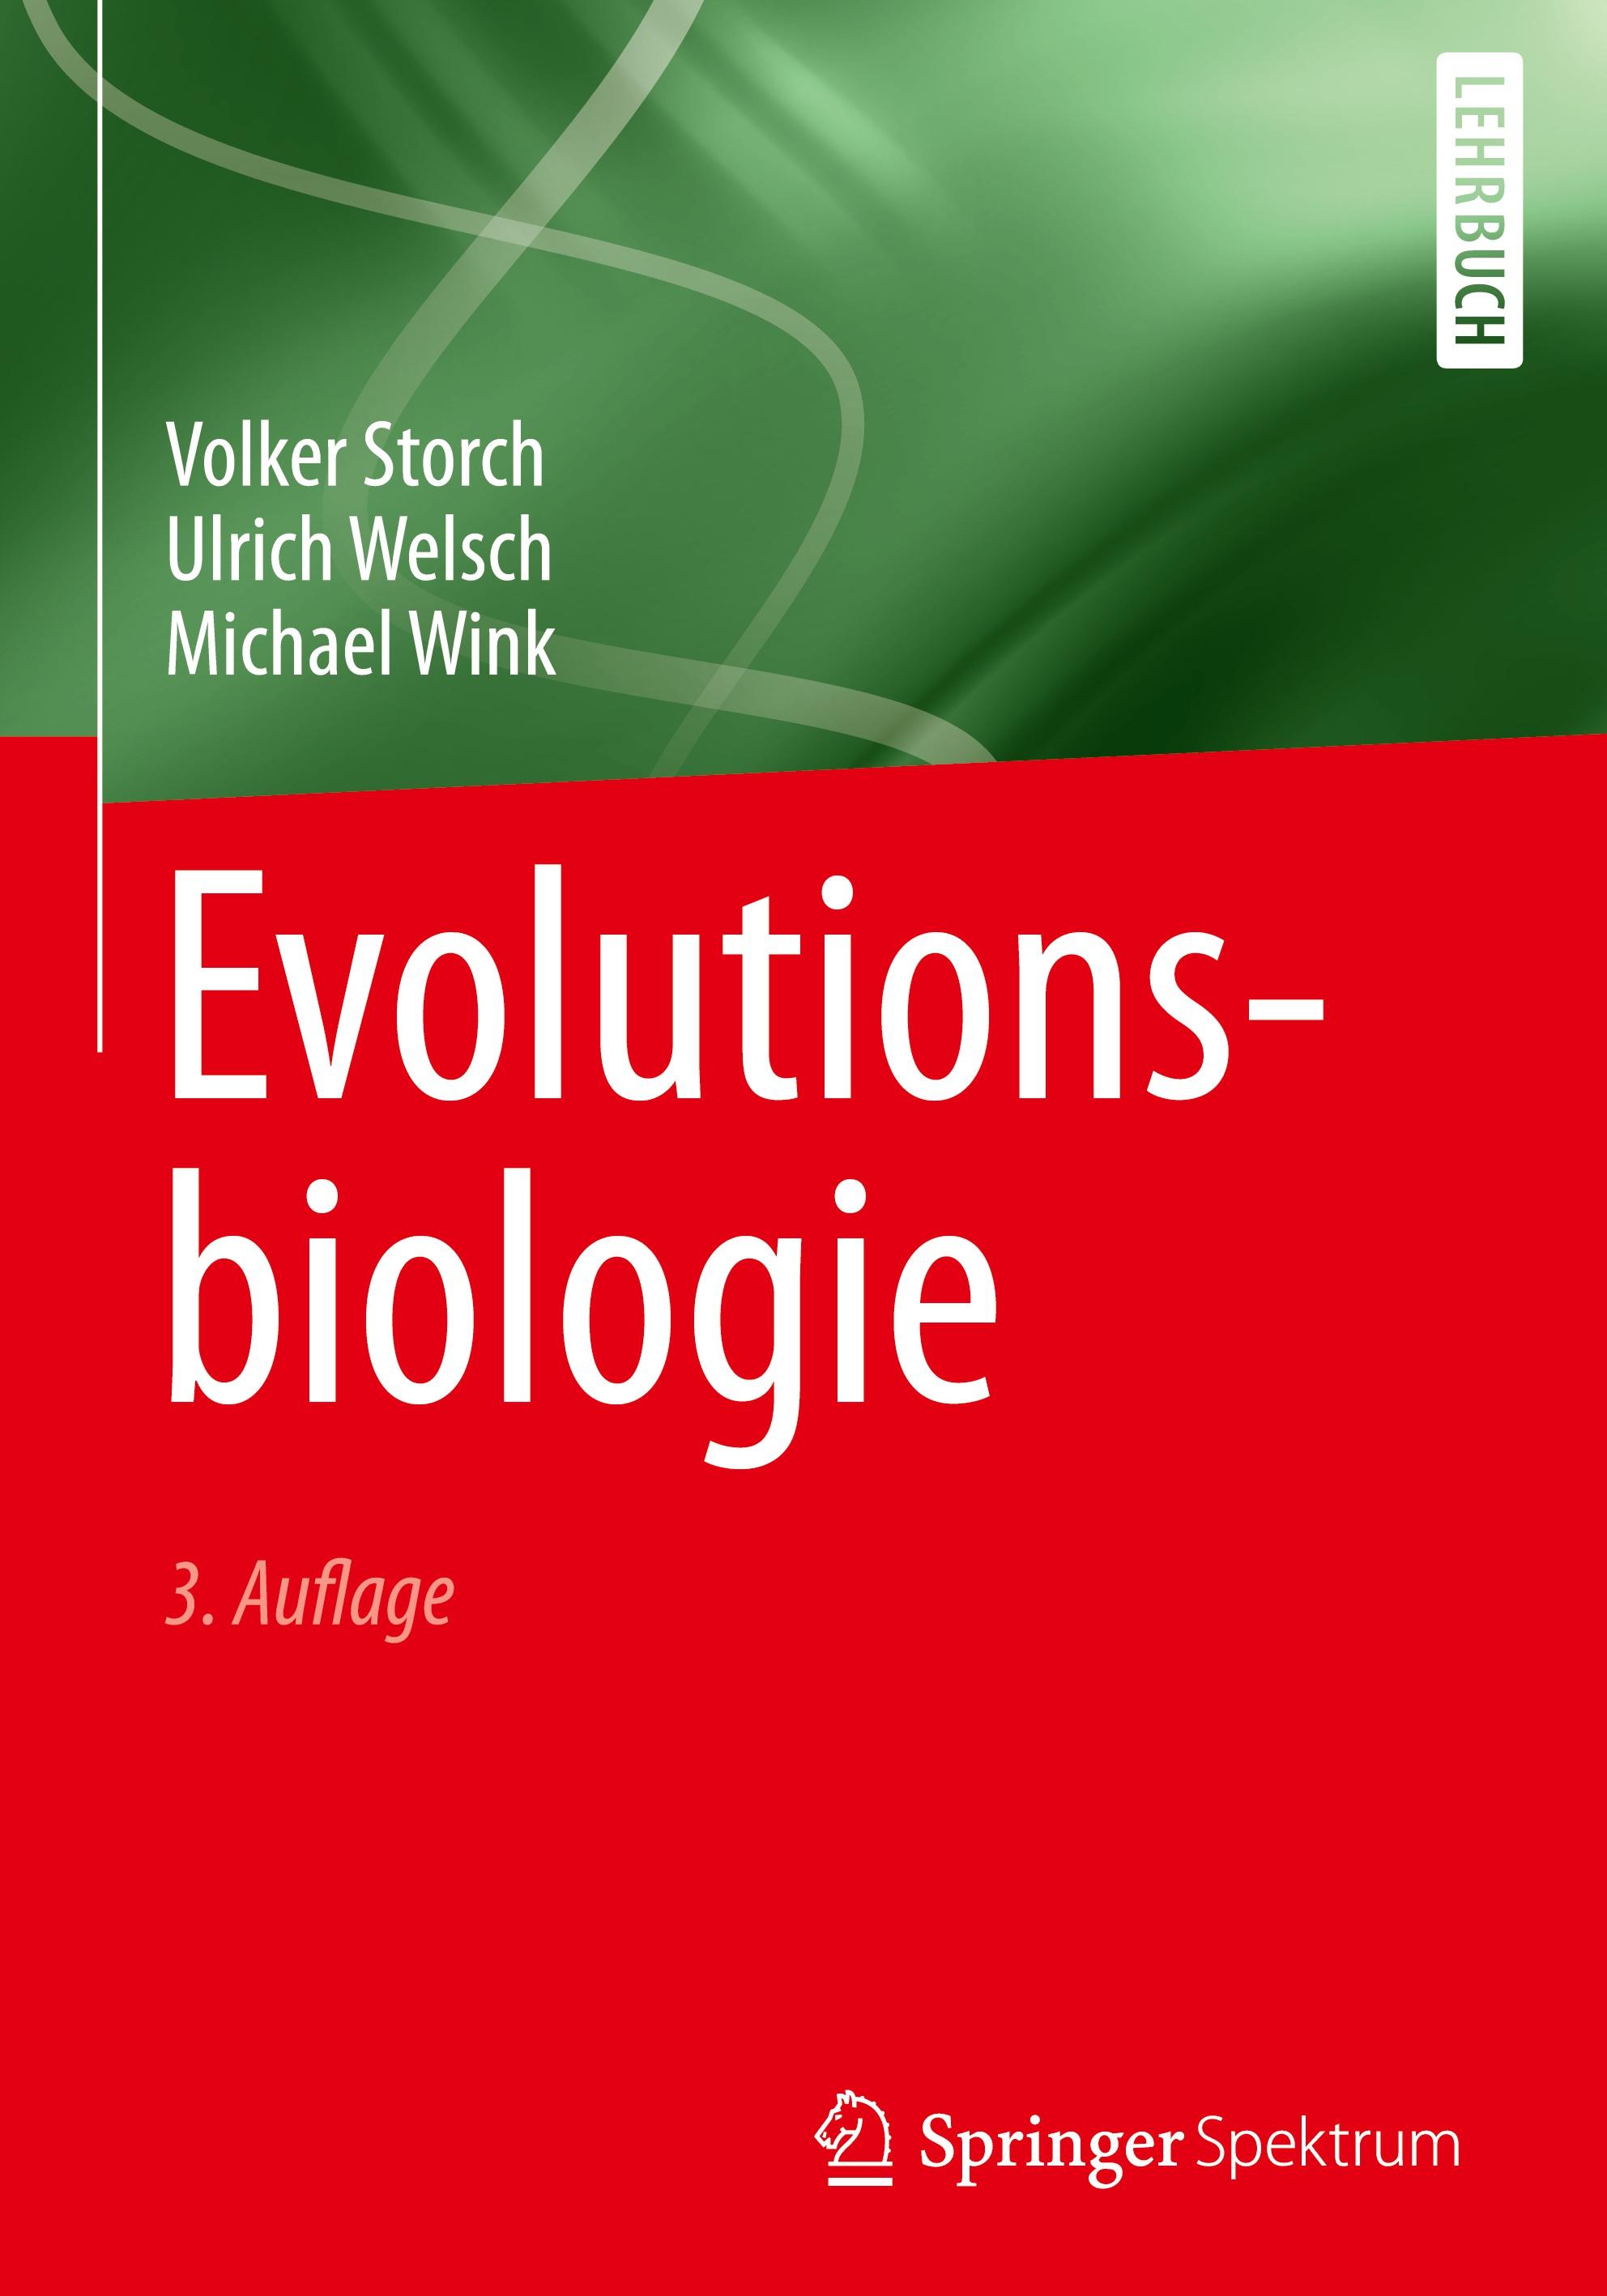 Evolutionsbiologie - Volker Storch|Ulrich Welsch|Michael Wink